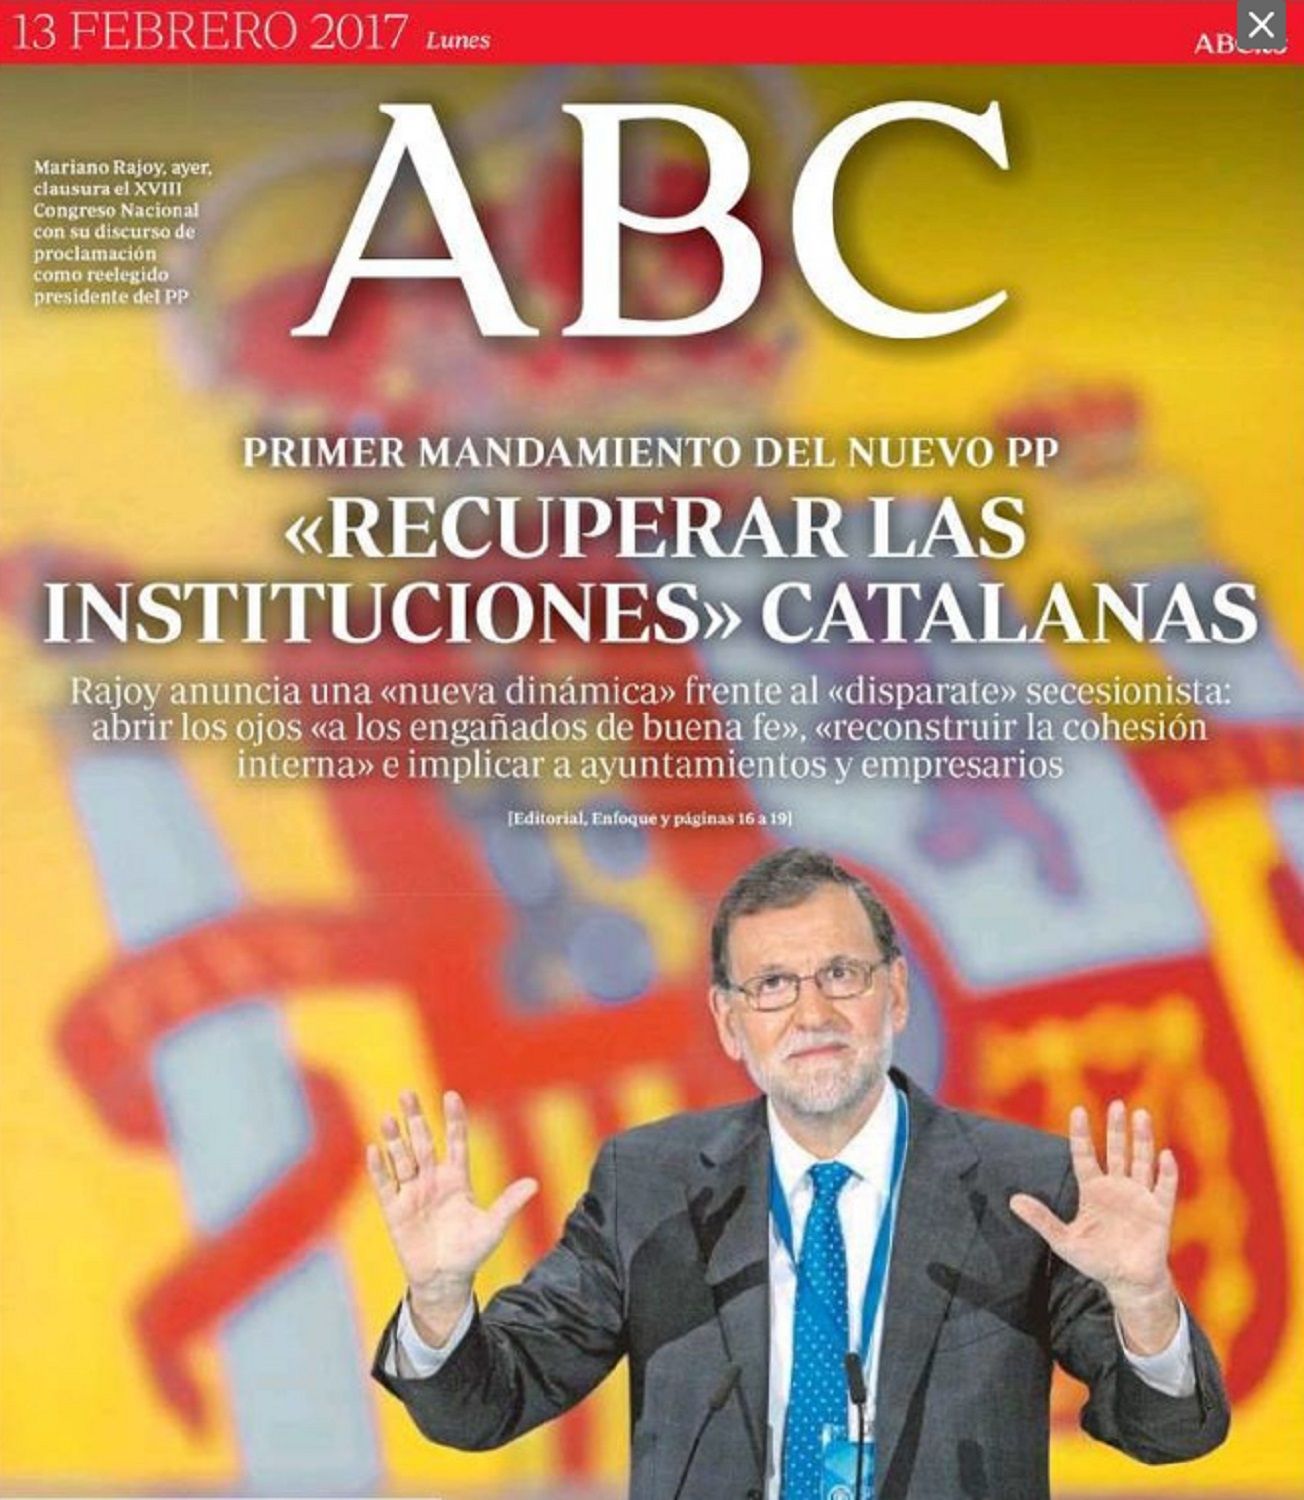 El ABC llama al PP a "recuperar" unas "instituciones catalanas" que no ha tenido nunca